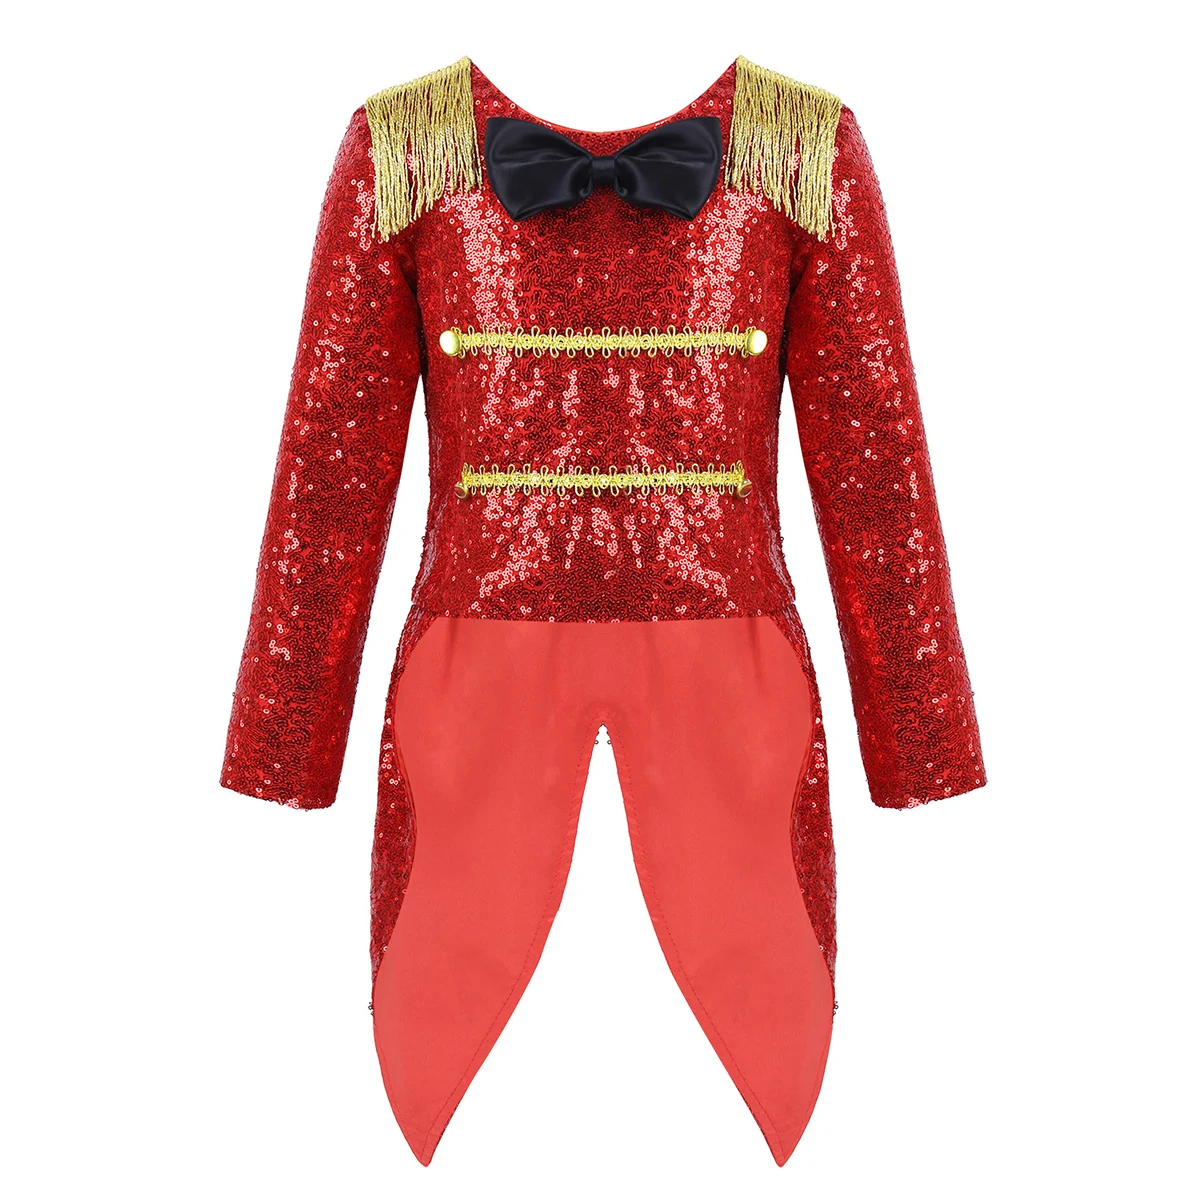 Детский костюм для костюмированной вечеринки в цирке на Хэллоуин для девочек, детская одежда для ролевых игр, нарядное шоу, блестящее пальто с бахромой и хвостом